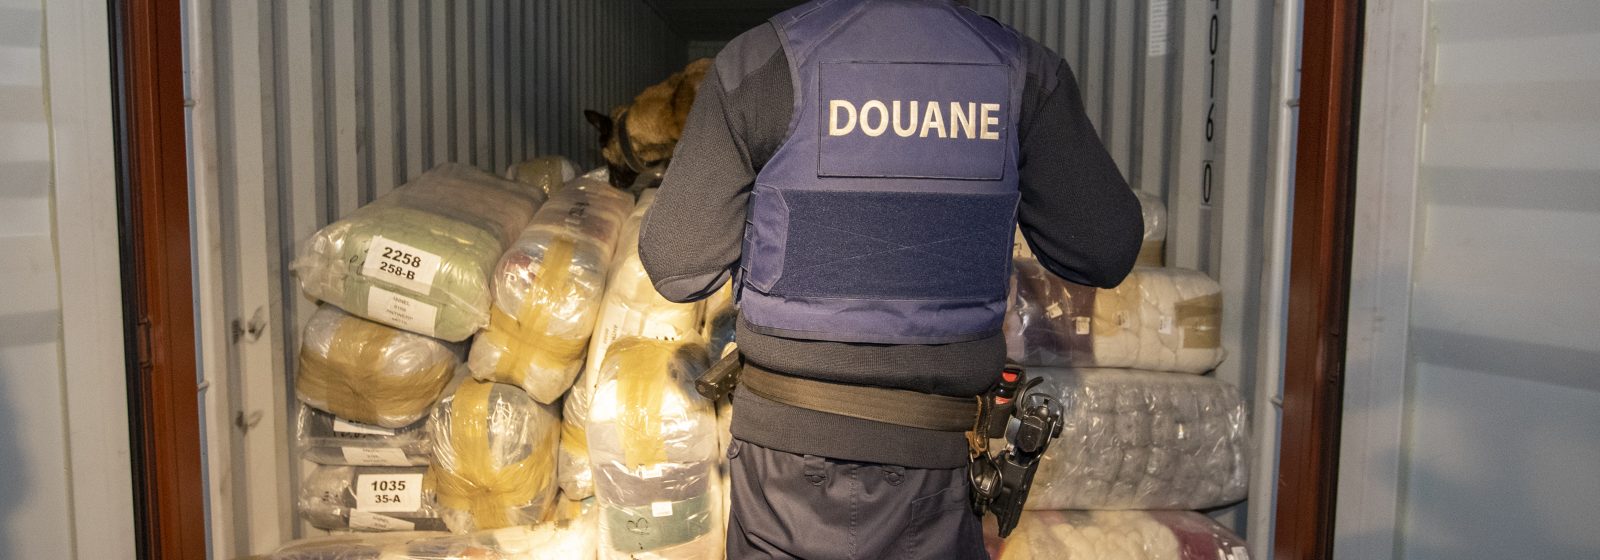 Douanier controleert container op drugs